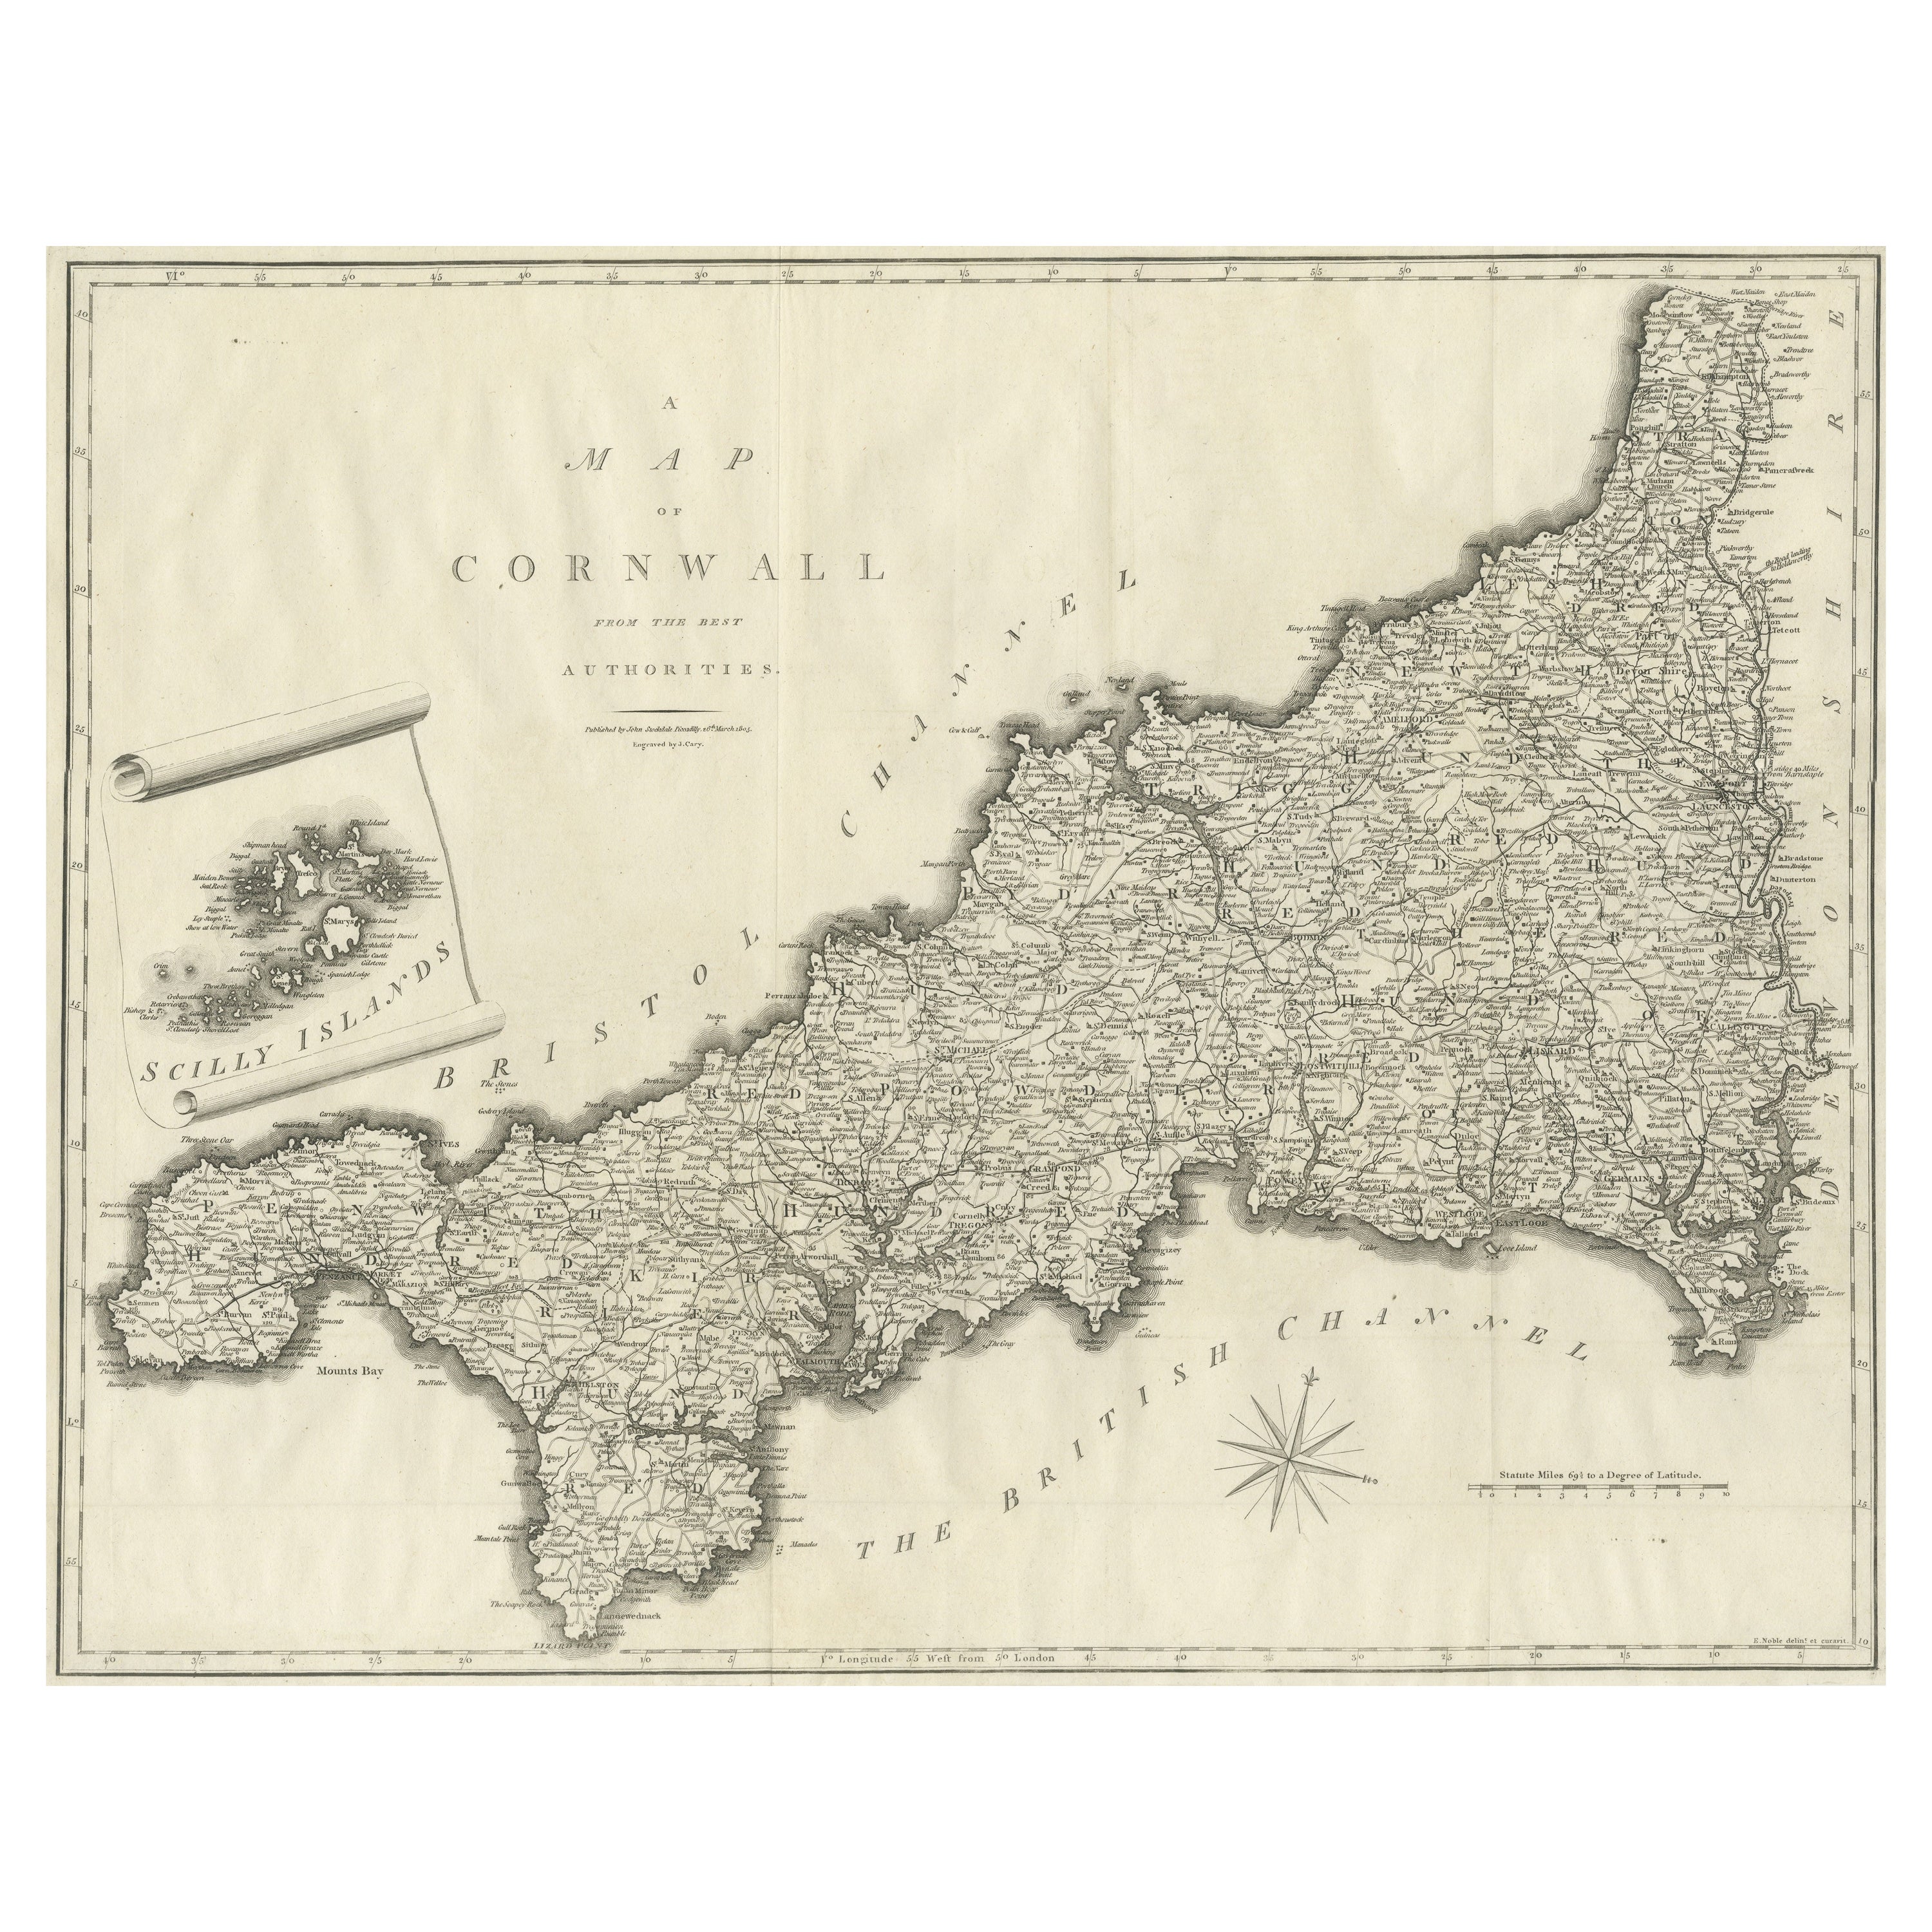 Große antike Grafschaftskarte von Cornwall und den Inseln von Scilly, England